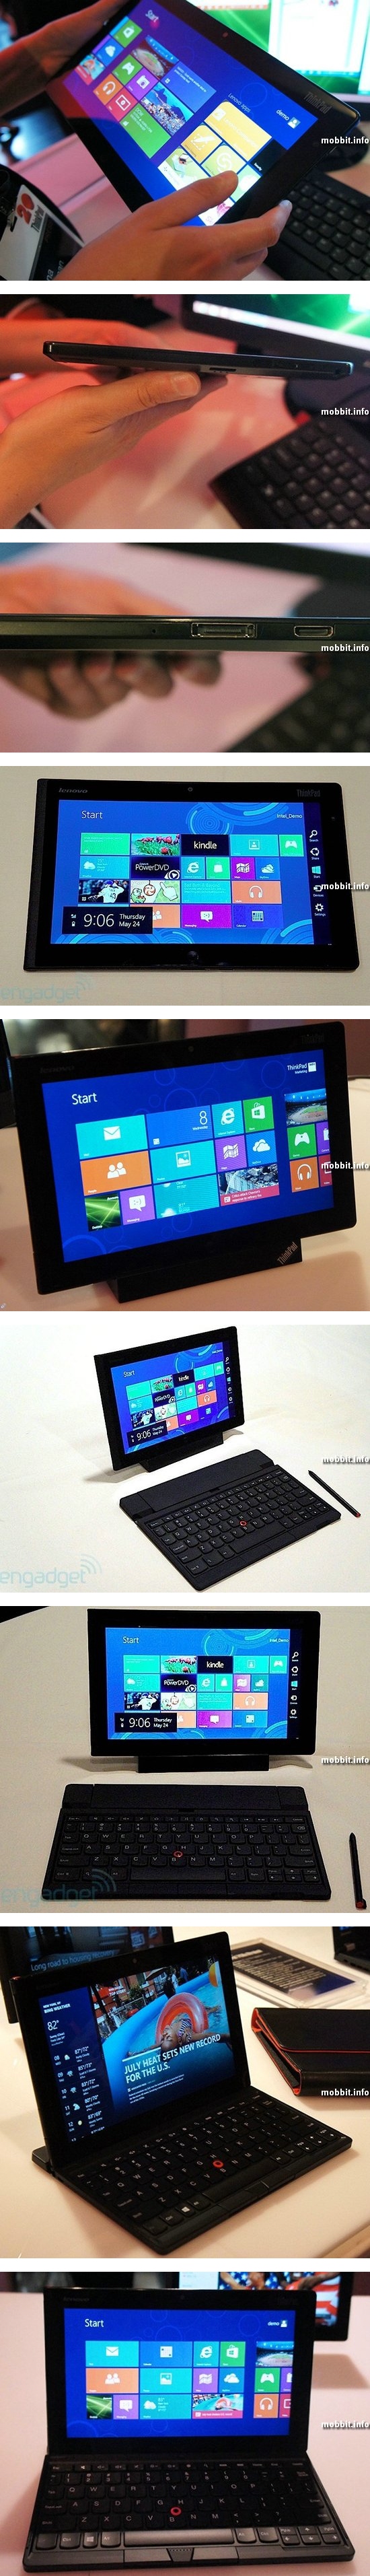 ThinkPad Tablet 2